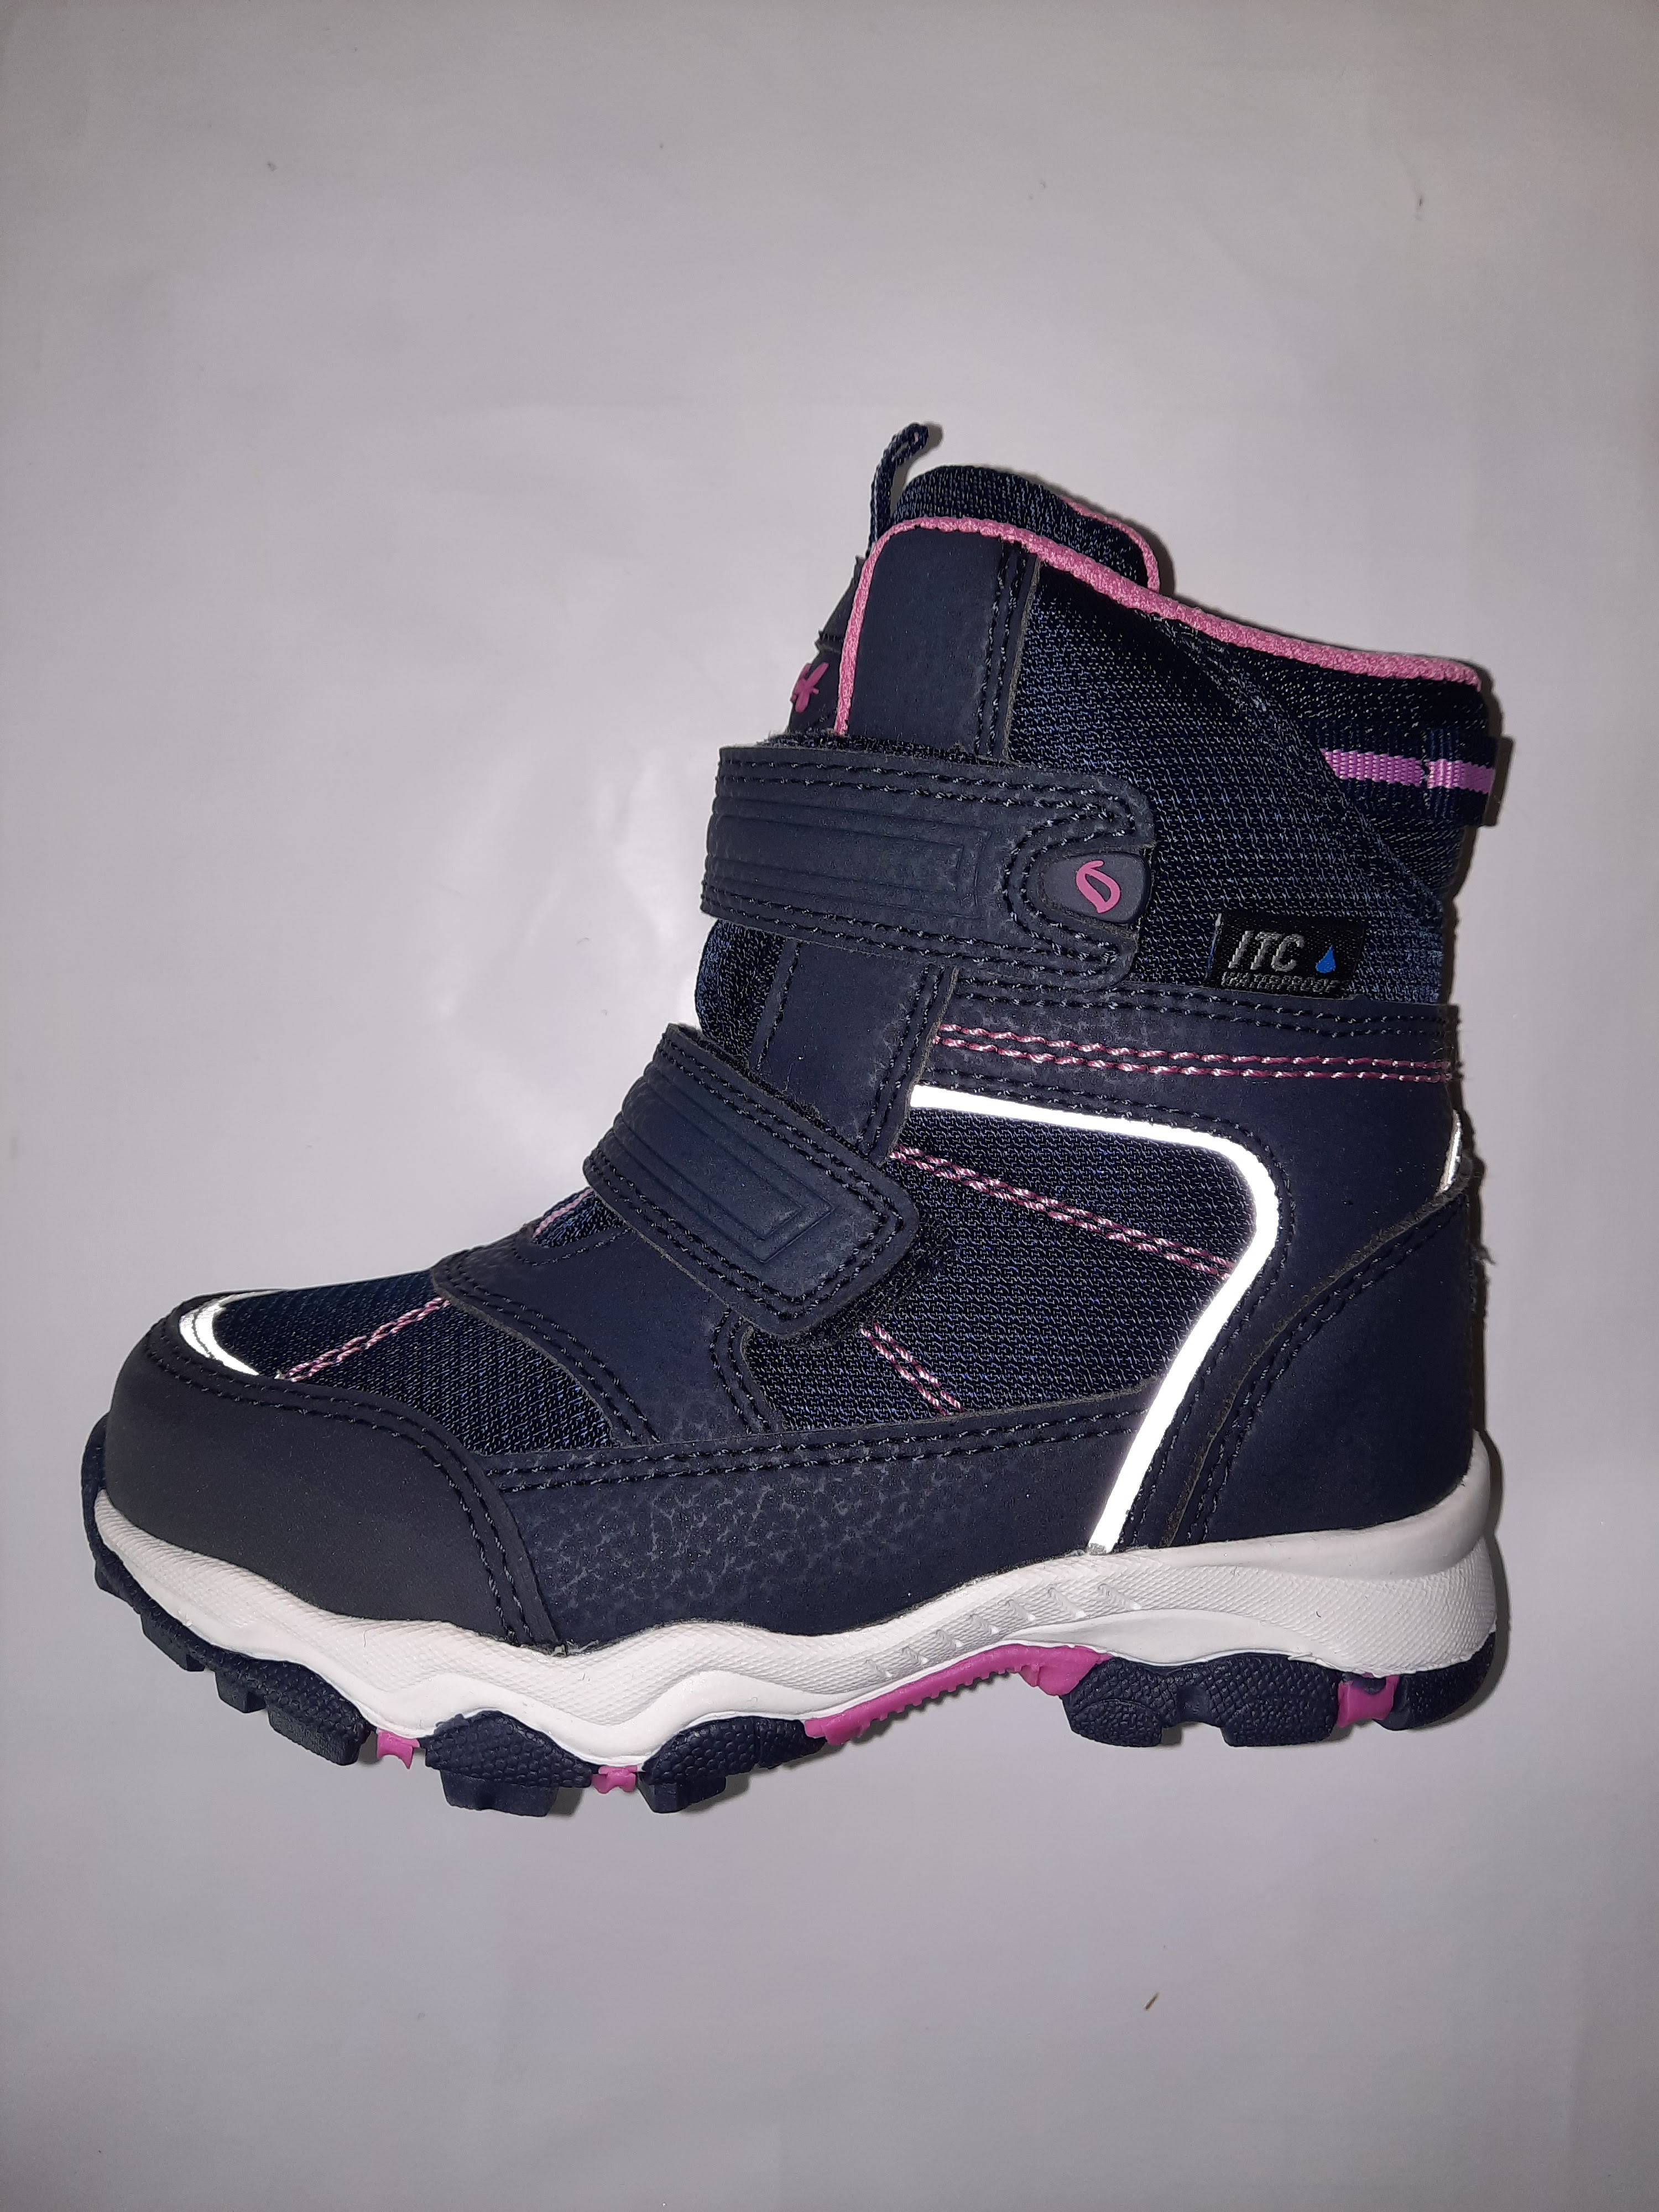 LEAF dívčí obuv Siljan navy/pink ITC Waterproof Velikost: 31